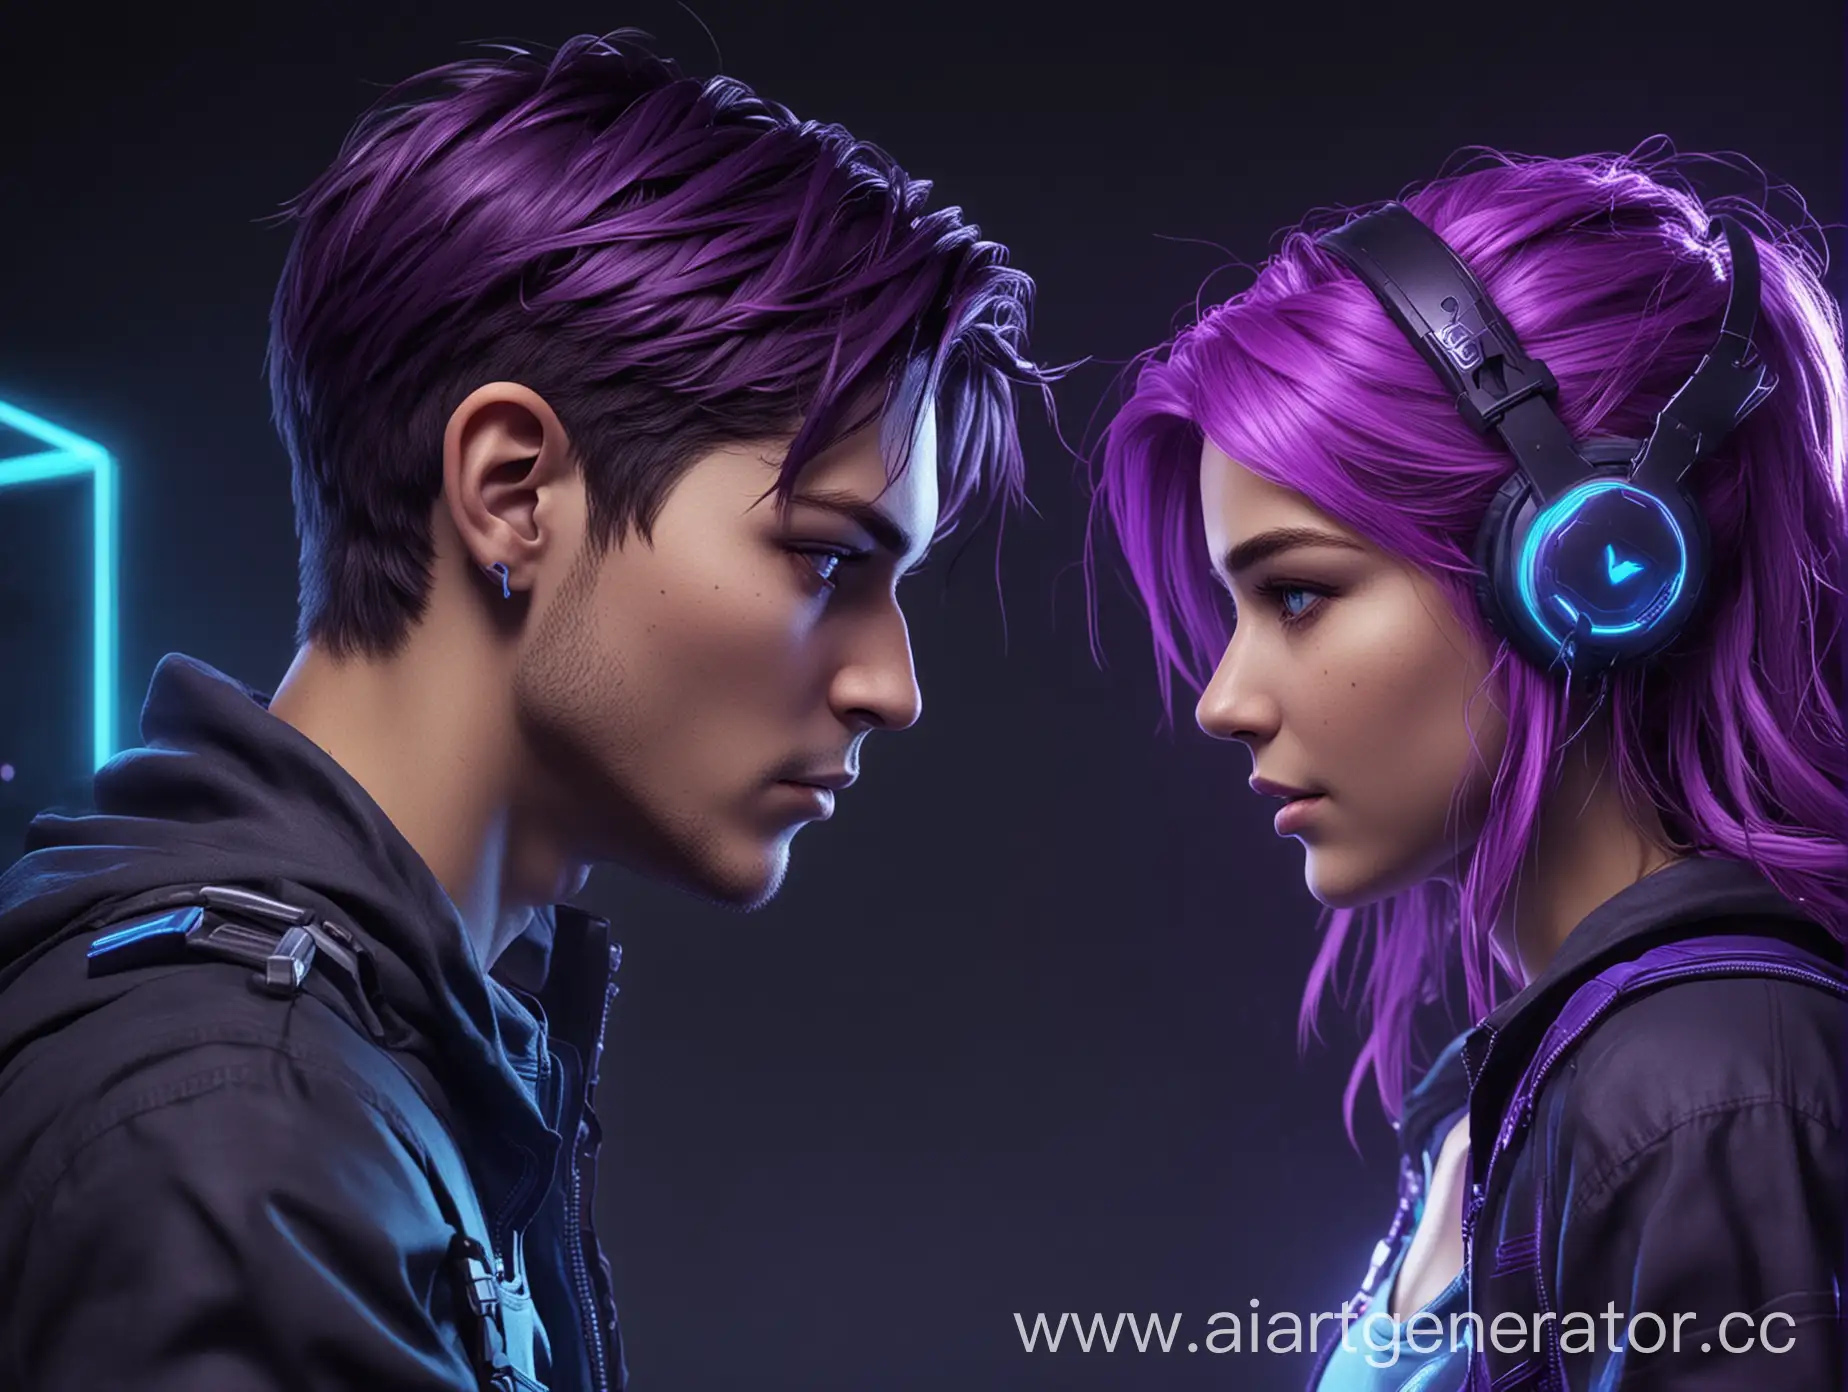 Создай 1 персонажа женского и 1 мужсково пола которые смотрят друг на друга в игровом стиле, сорвенование, компьюторы, видеоигры, цвета синий и фиолетовый неоновые 